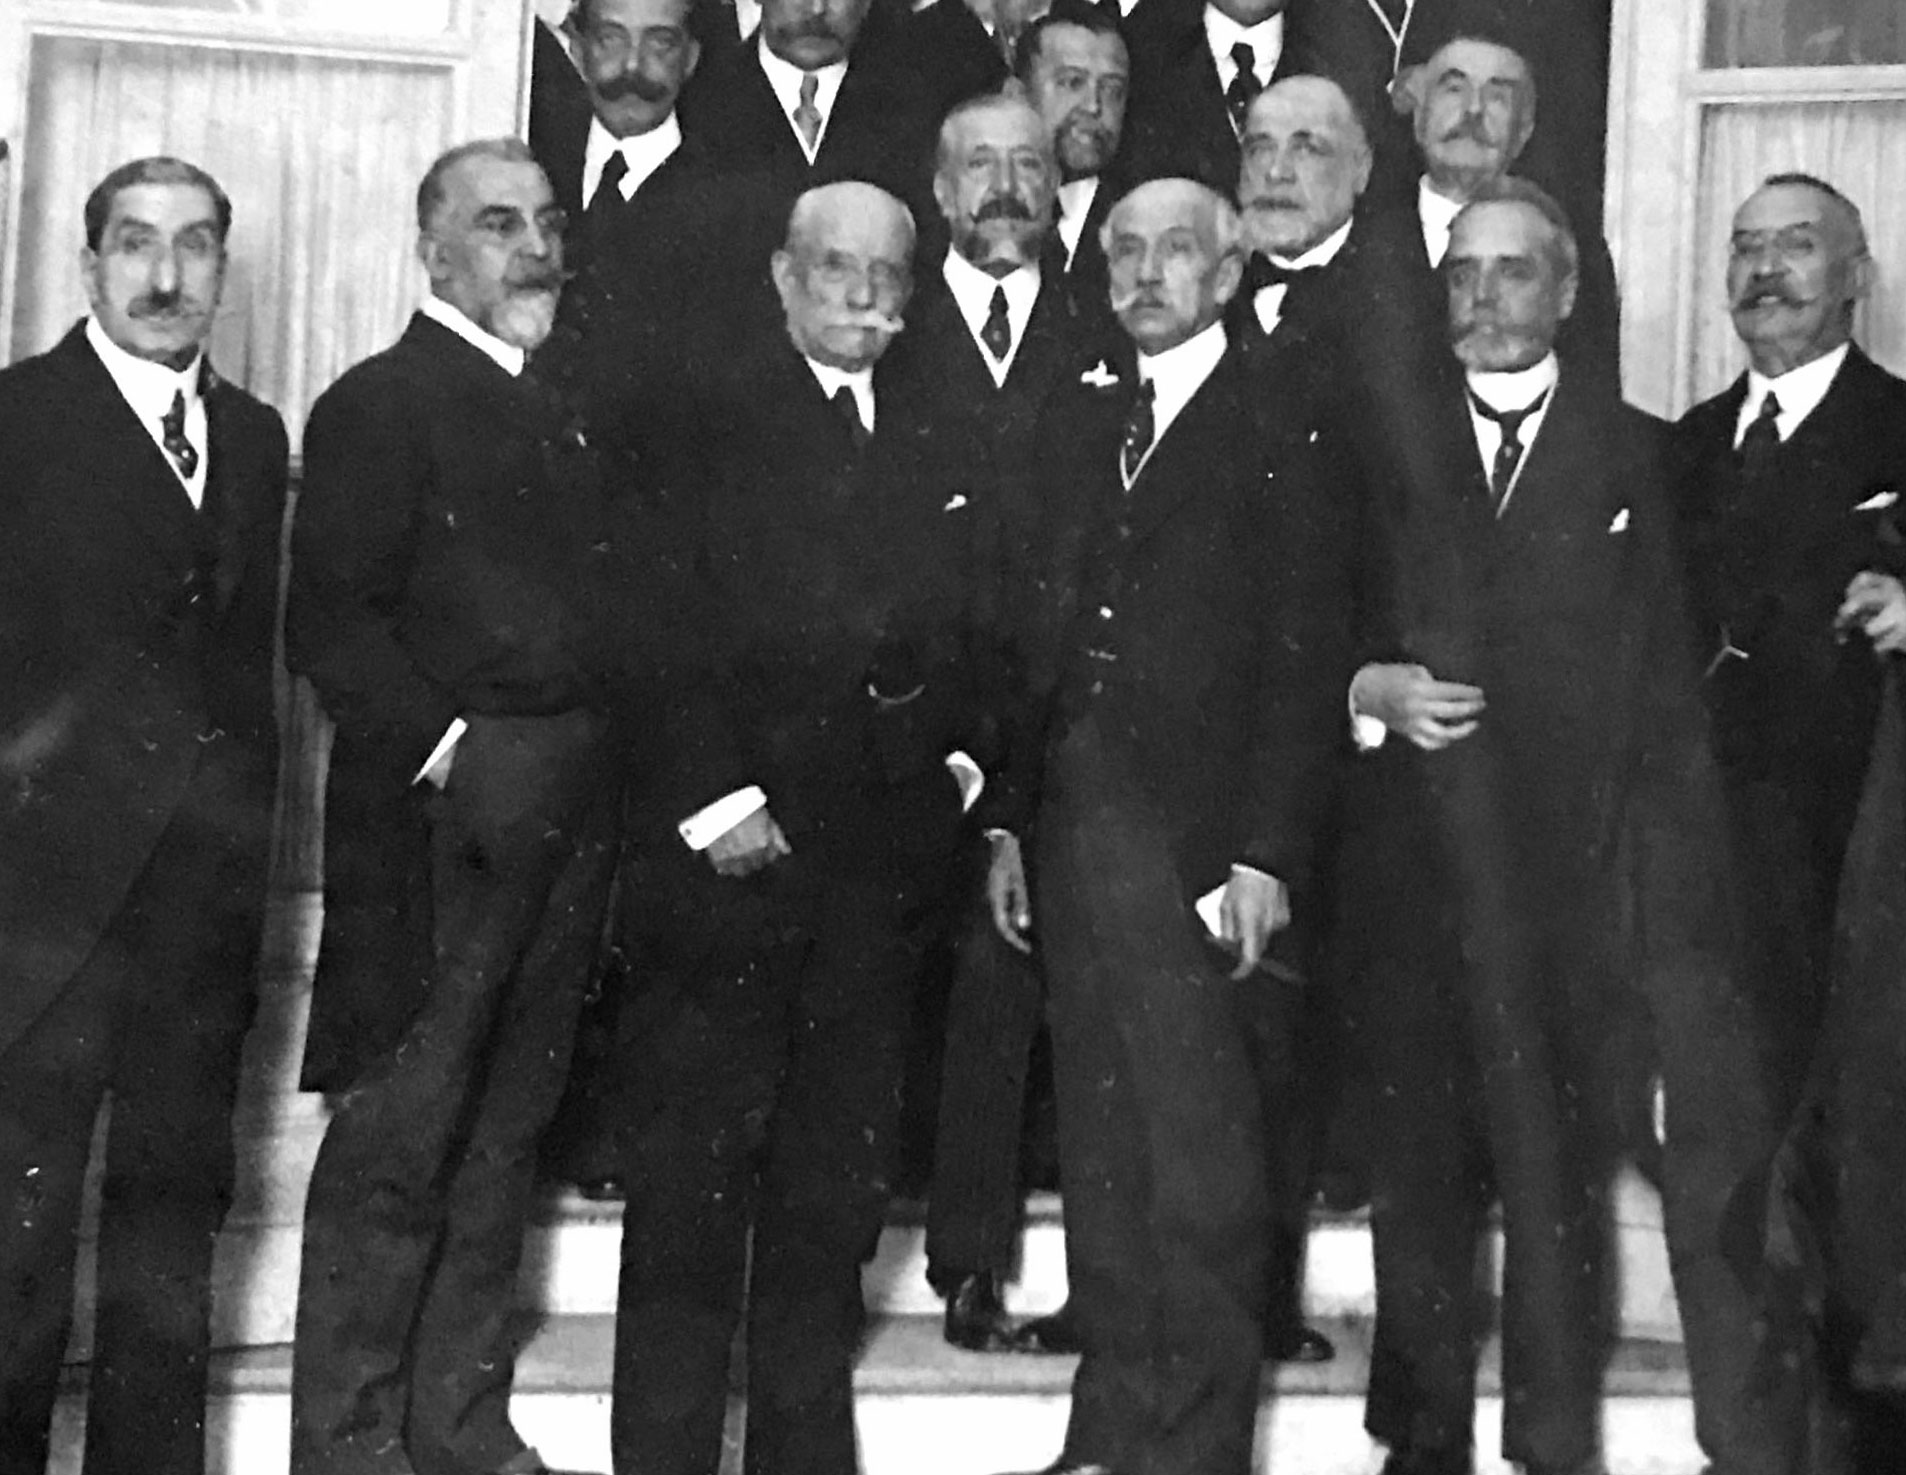 Fotografía en blanco y negro de Eduardo Dato posando junto con otros membros del partido conservador en una escalinataEduardo Dato pos